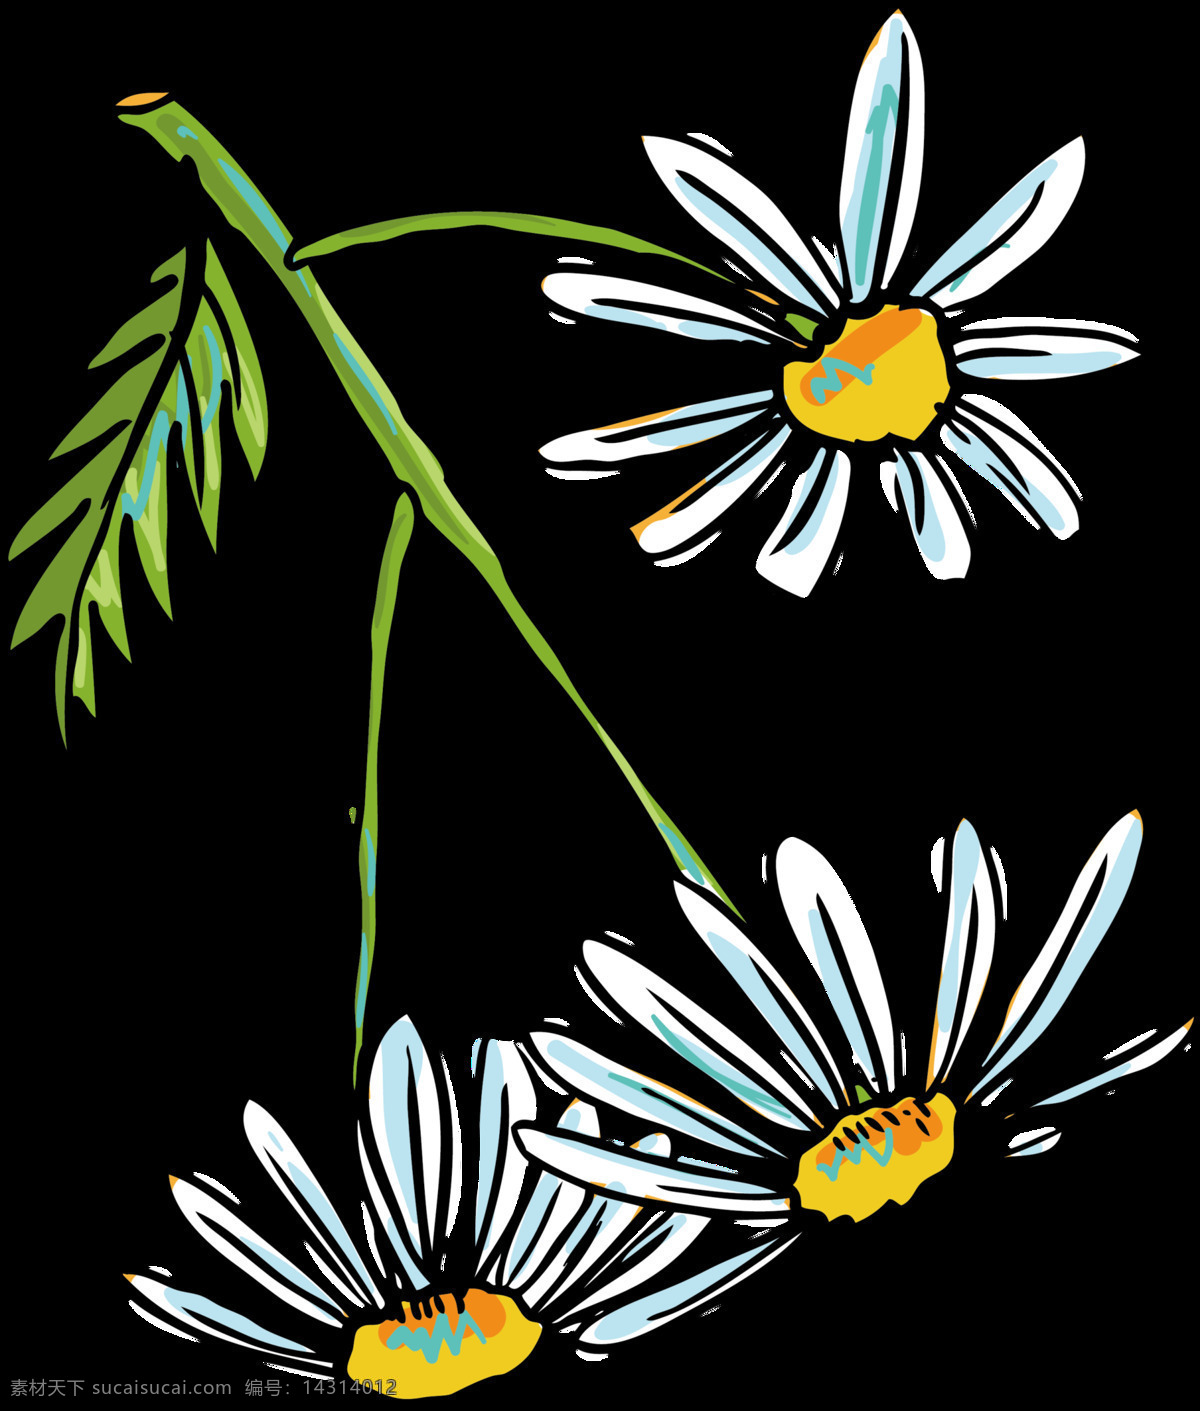 清新 手绘 菊花 装饰 元素 花枝 黄色花蕊 蓝色花朵 植物 装饰元素